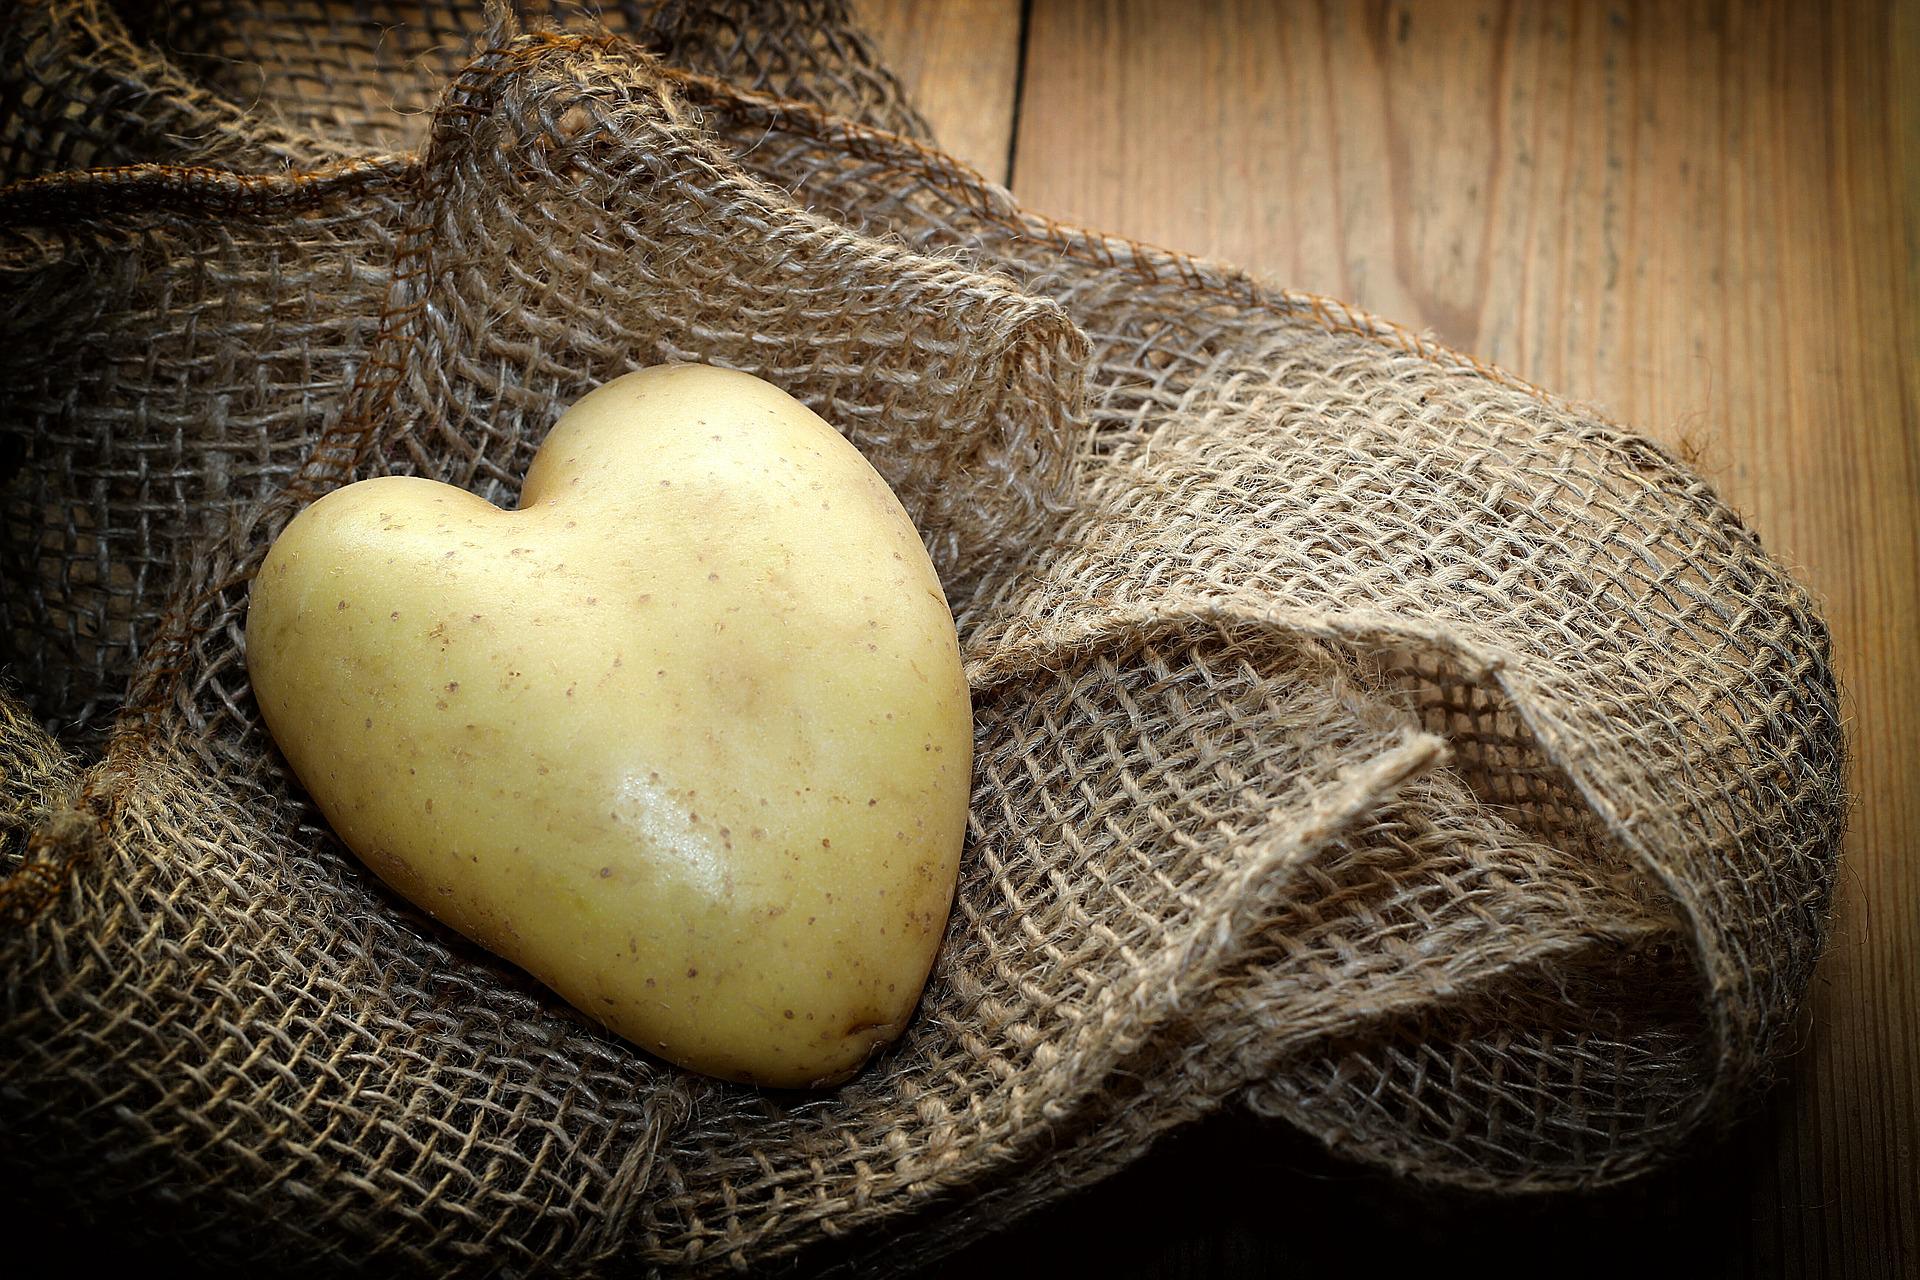 Die Kartoffel, auch "Erdapfel" genannt, liebt den Gäuboden.